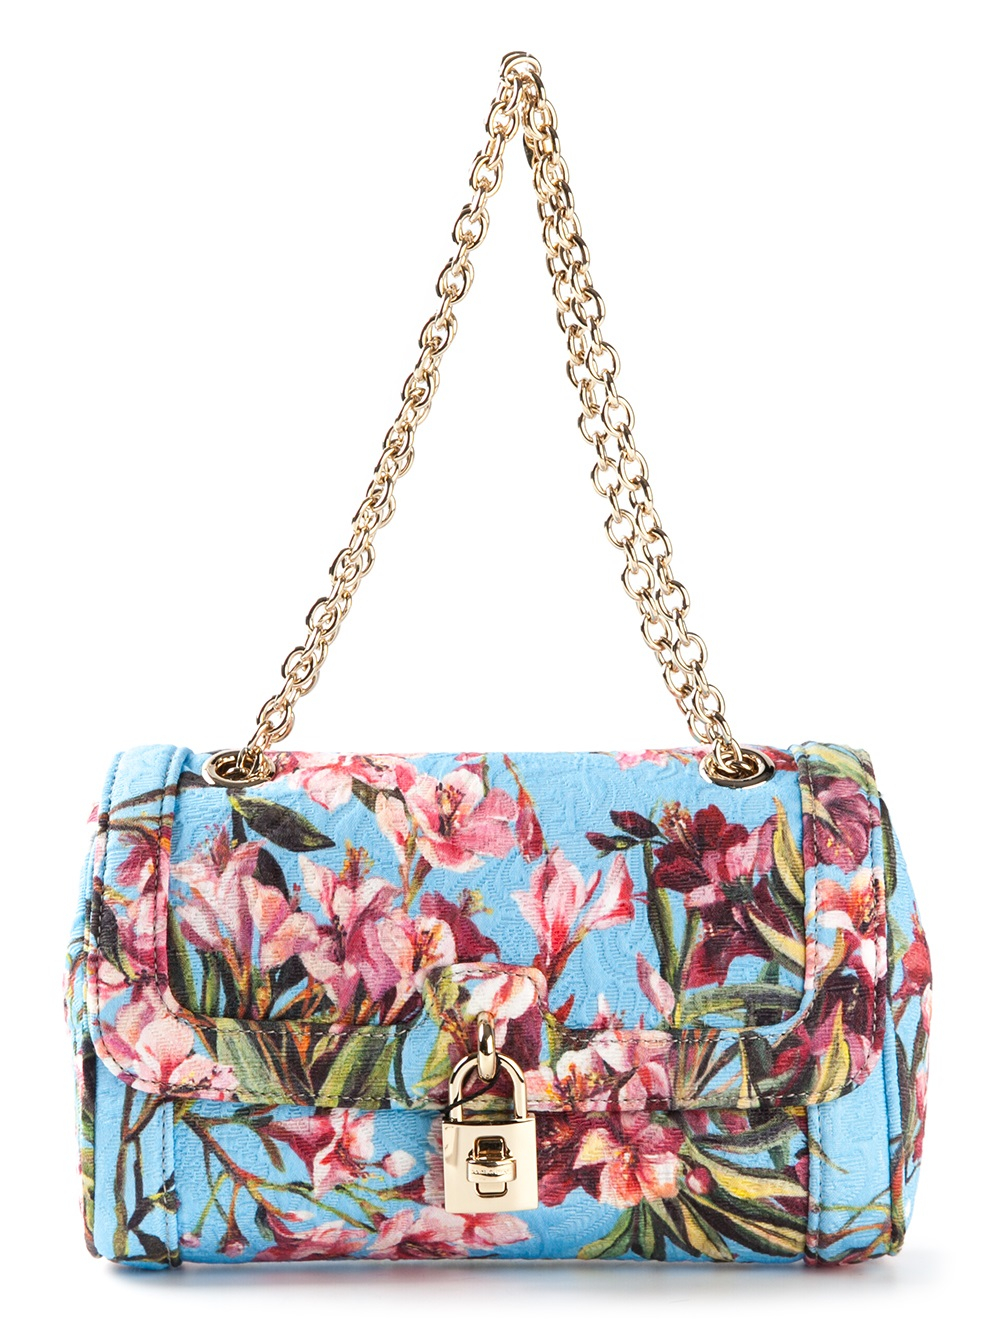 Dolce & Gabbana 'Dolce' Floral Print Shoulder Bag in Blue | Lyst